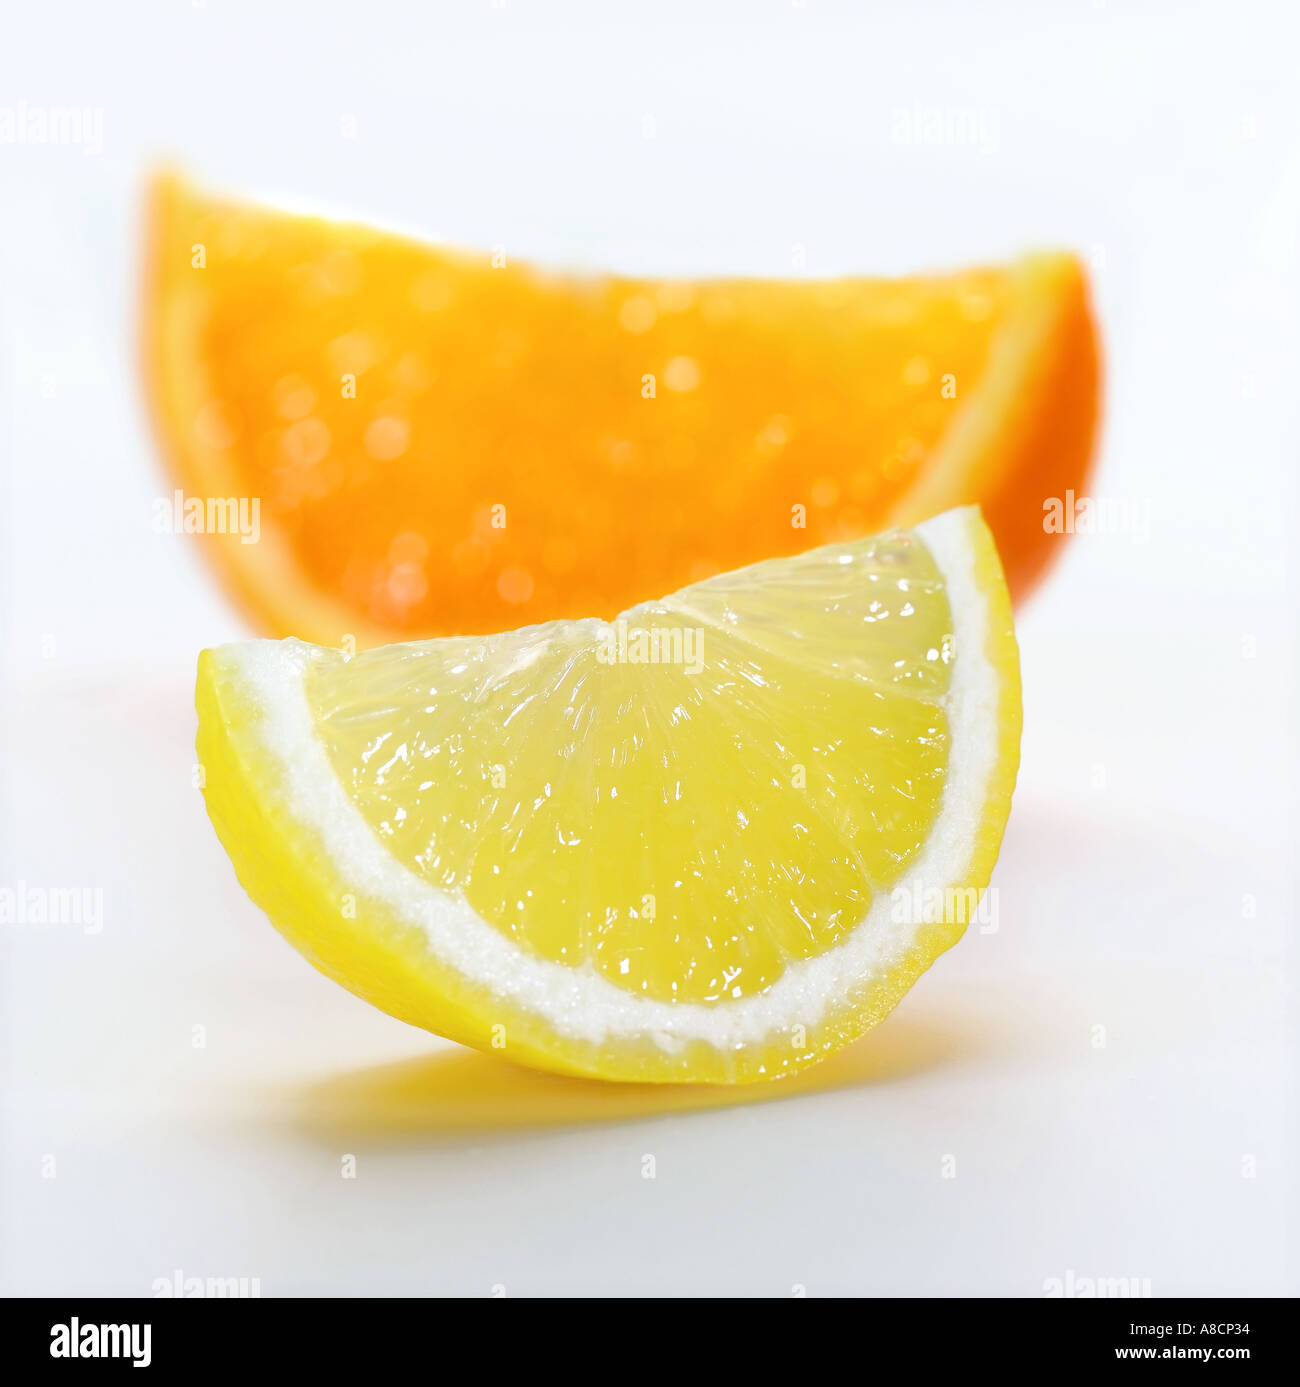 orange and lemon Stock Photo